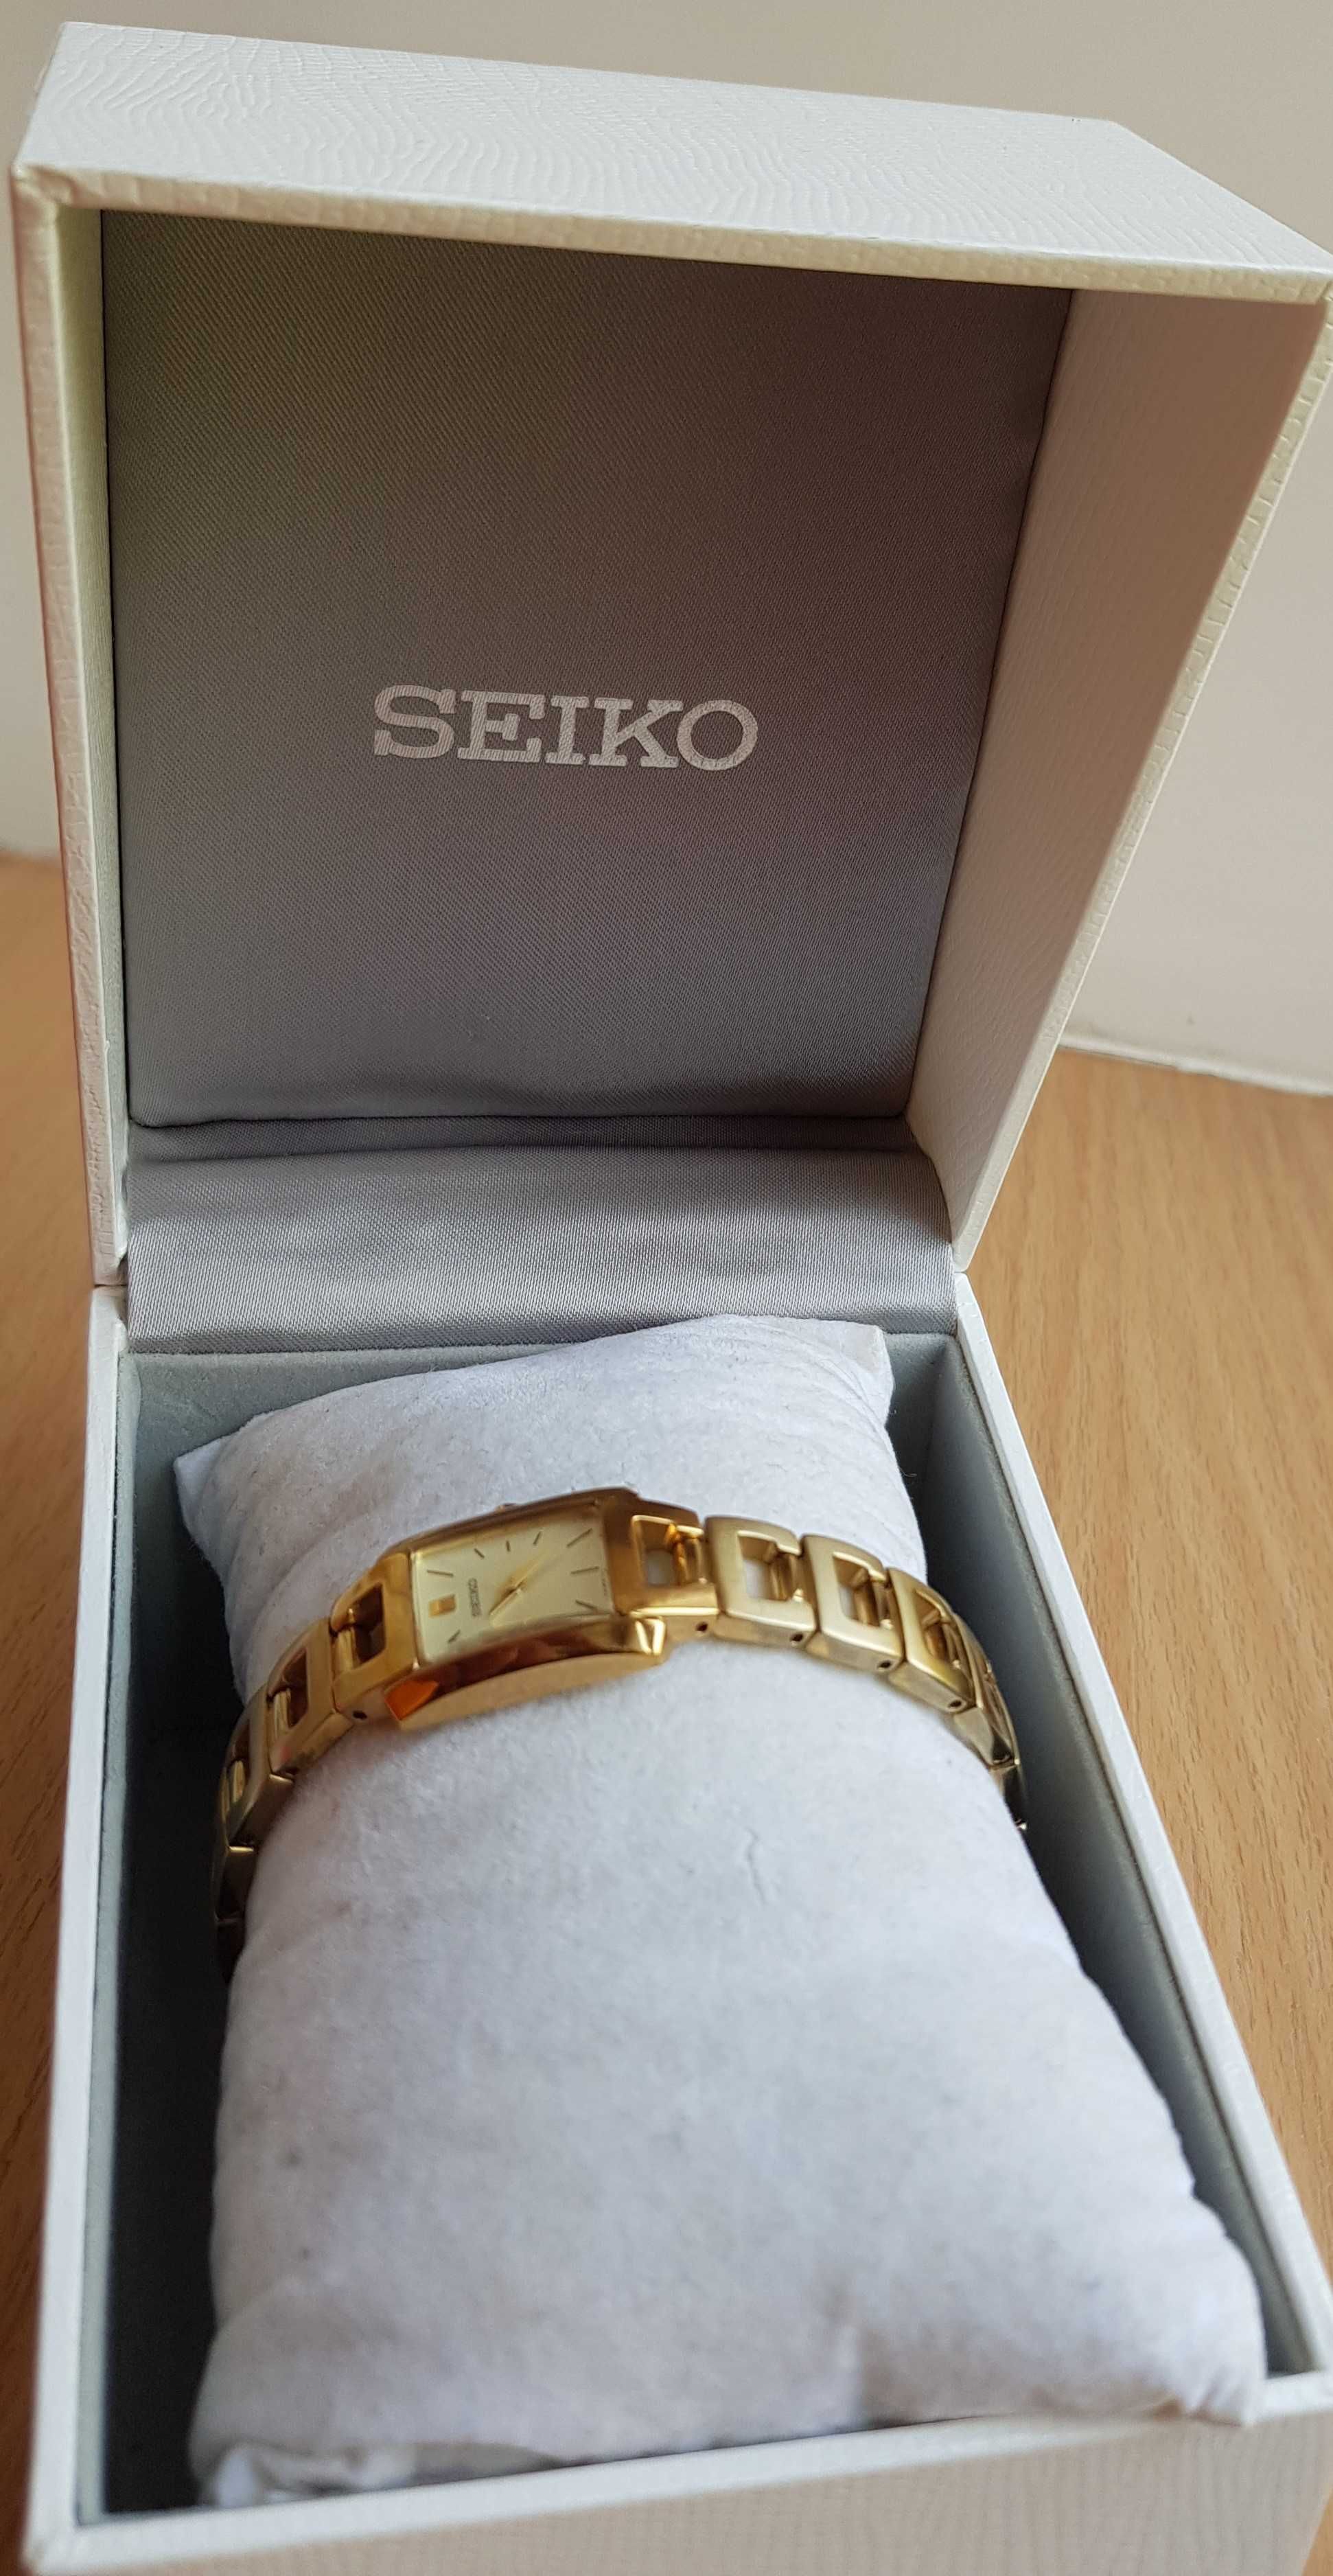 Женские часы / годинник Seiko  оригинал + браслет.